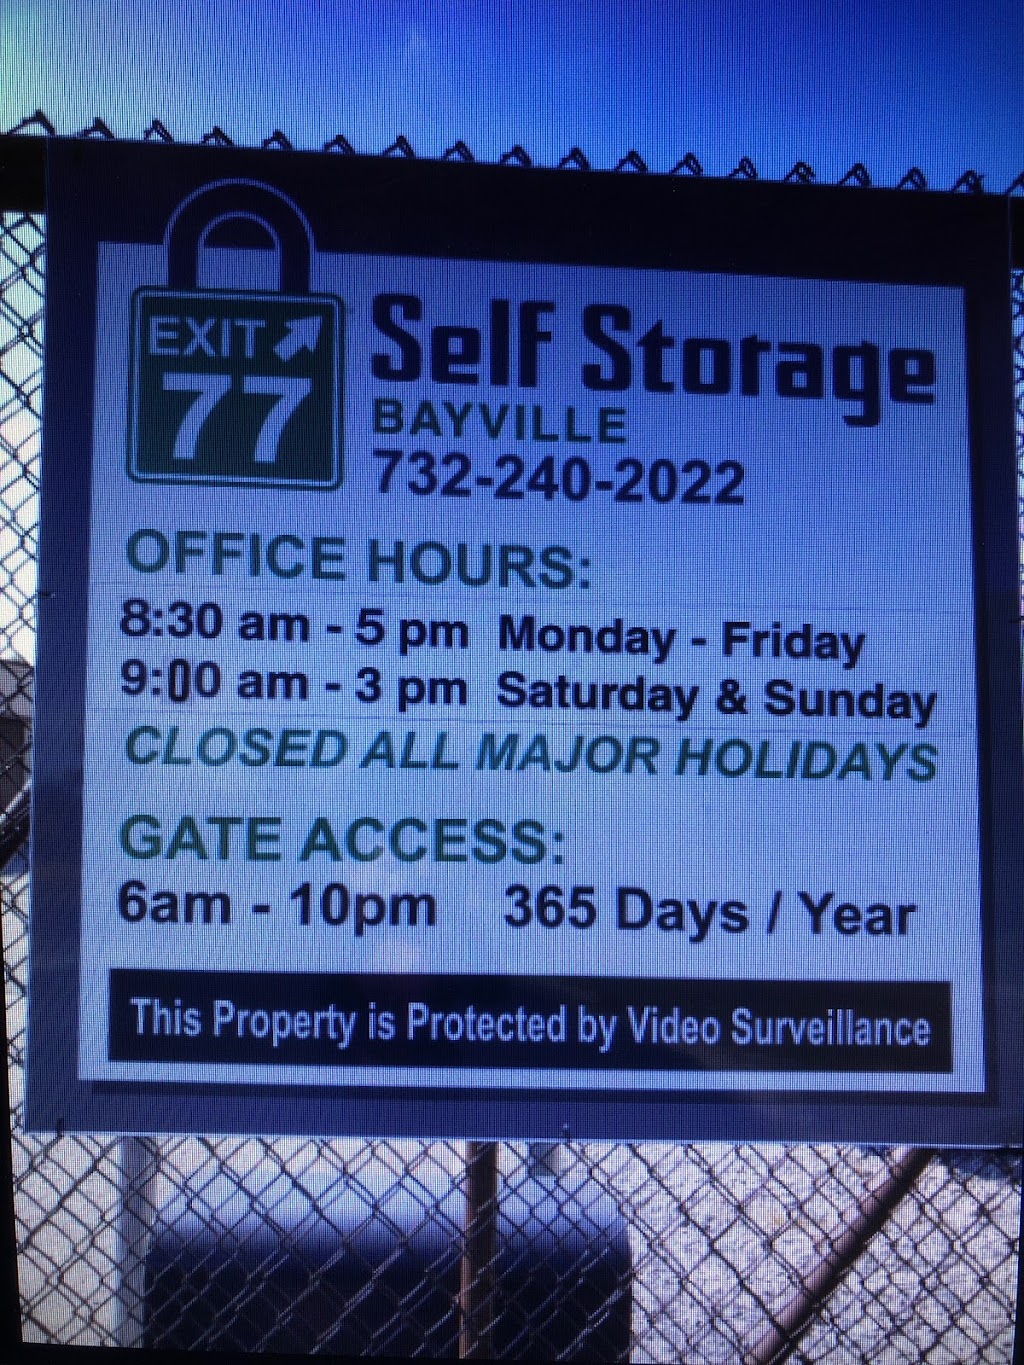 Exit 77 Self Storage | 182 Queens Blvd, Bayville, NJ 08721 | Phone: (732) 240-2022